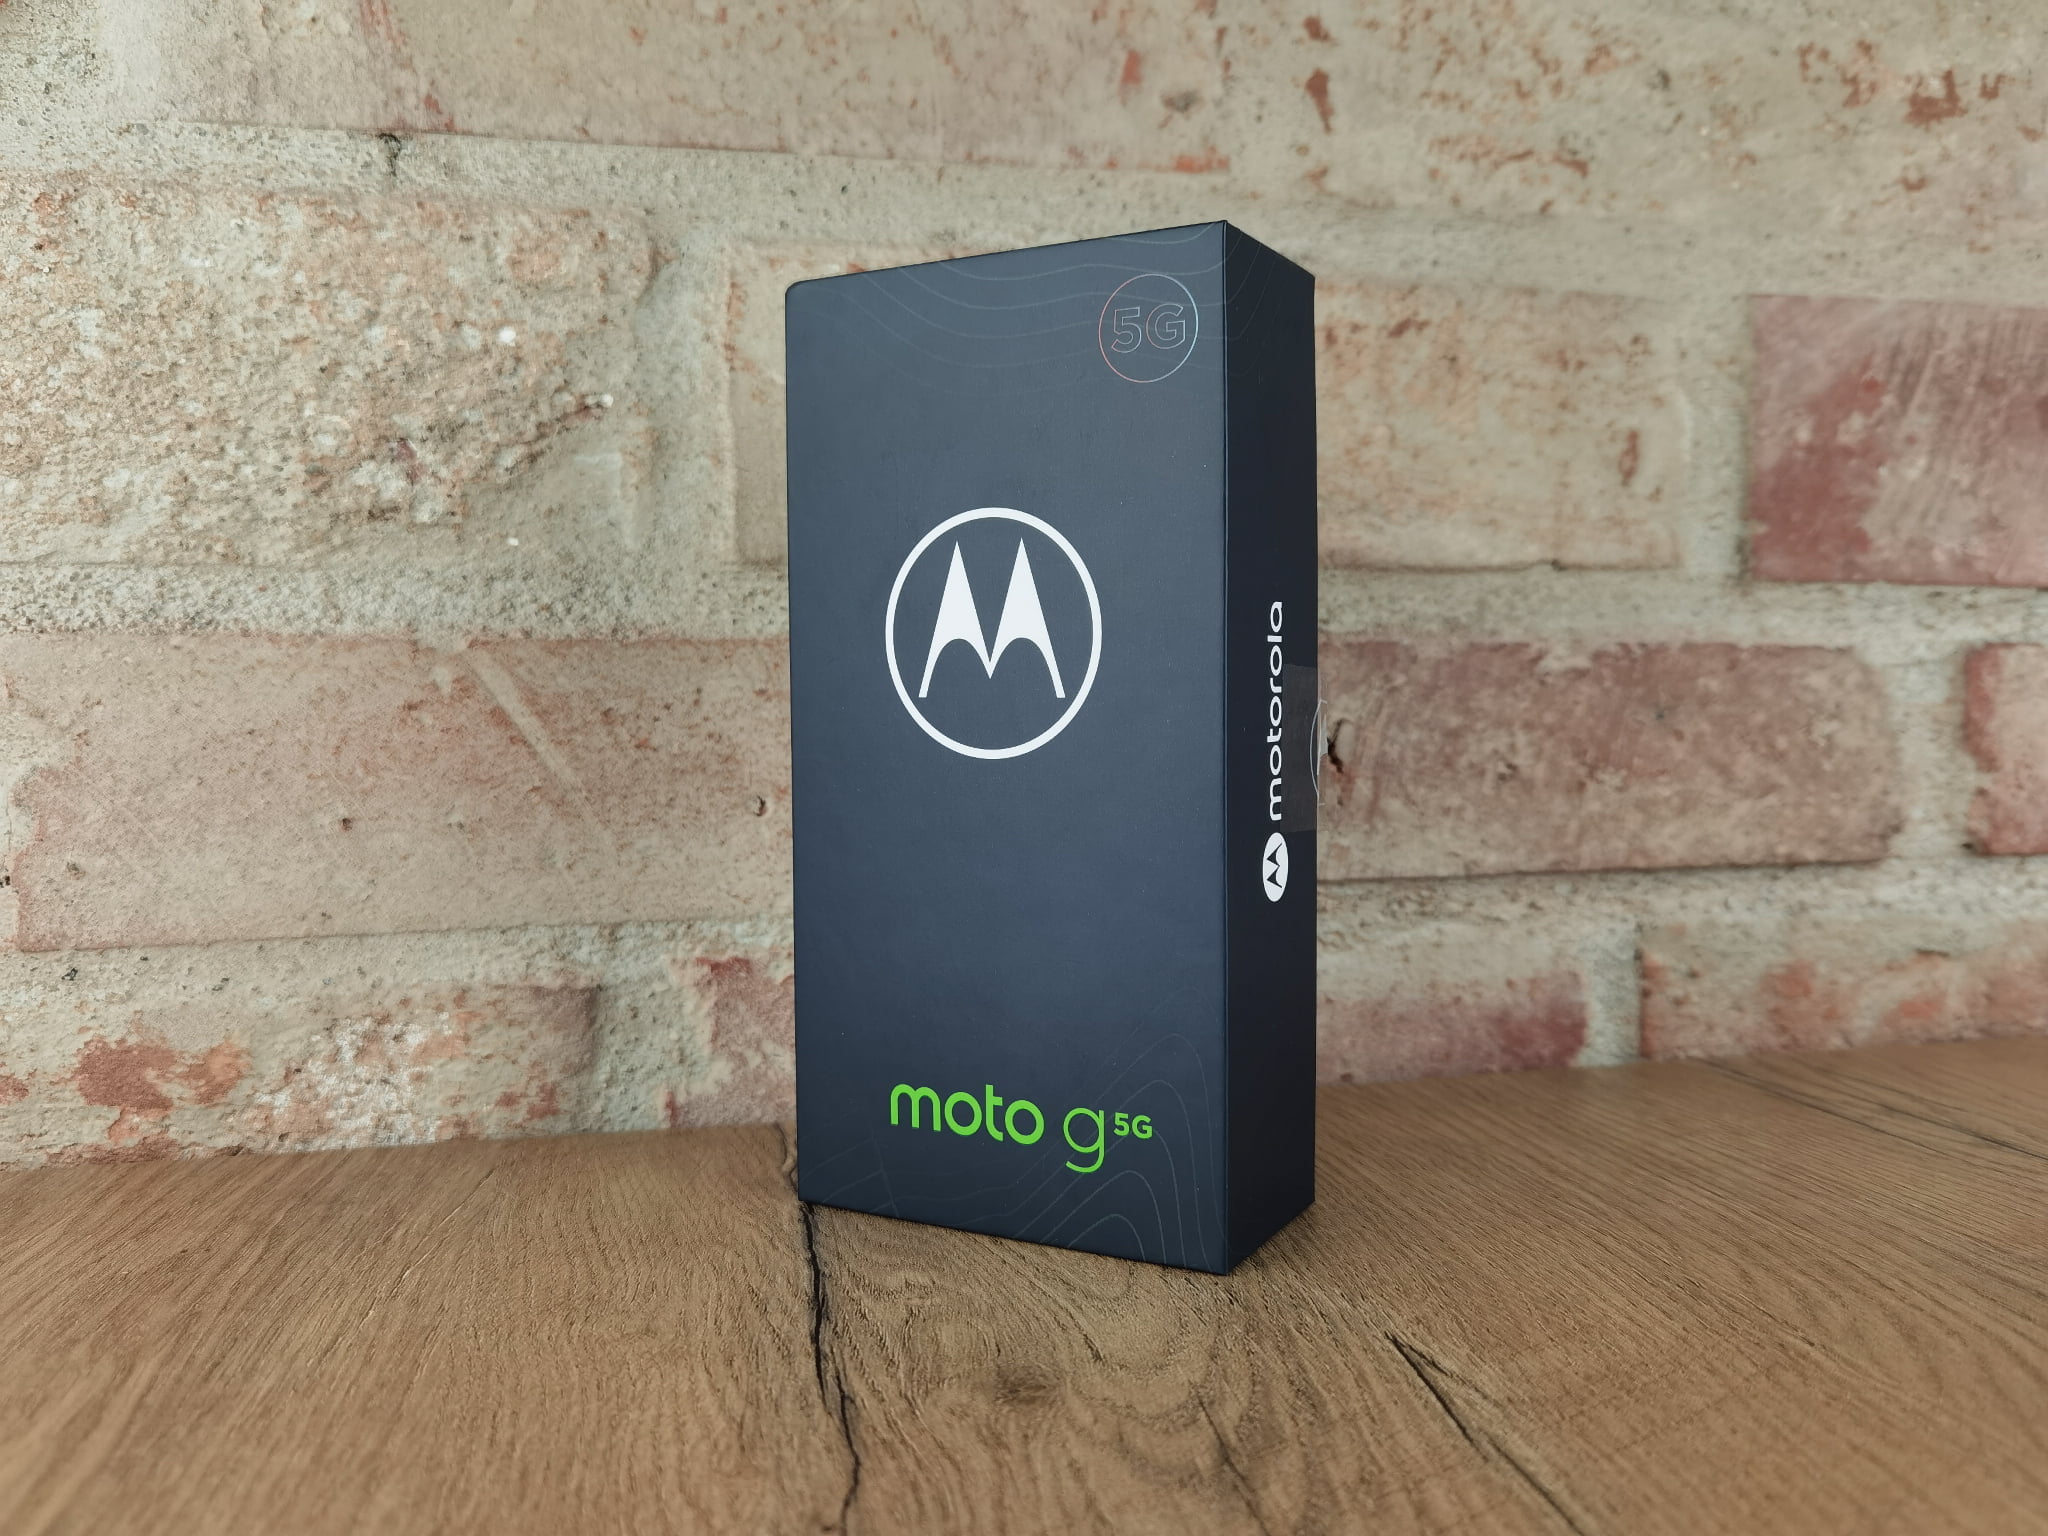 Motorola Moto G 5G recenzja test czy warto